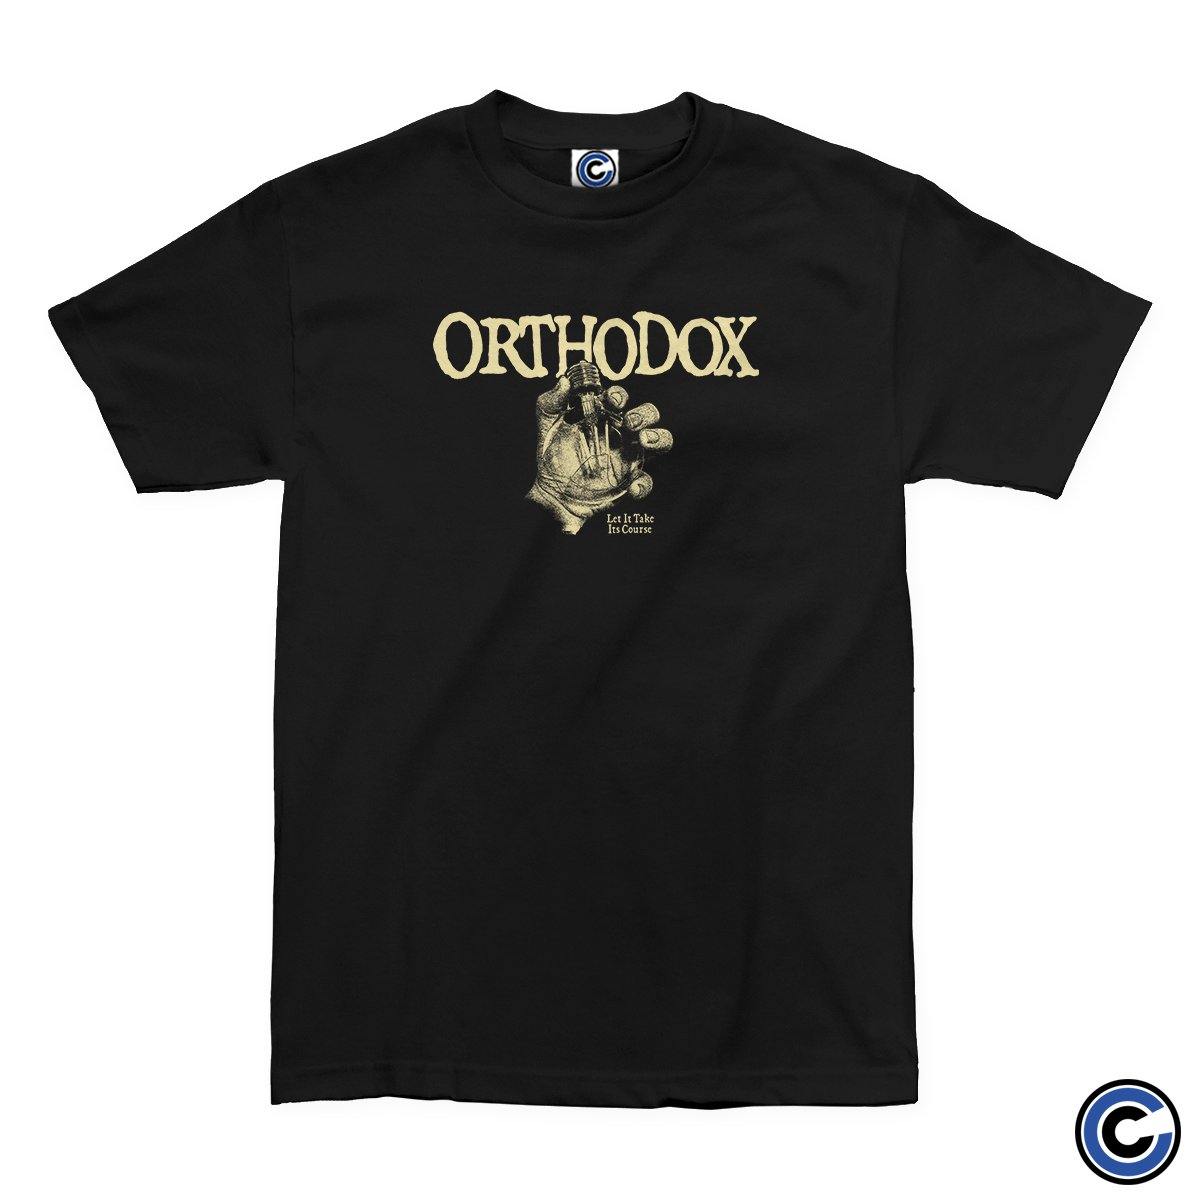 Buy – Orthodox "Lightbulb" Shirt – Band & Music Merch – Cold Cuts Merch